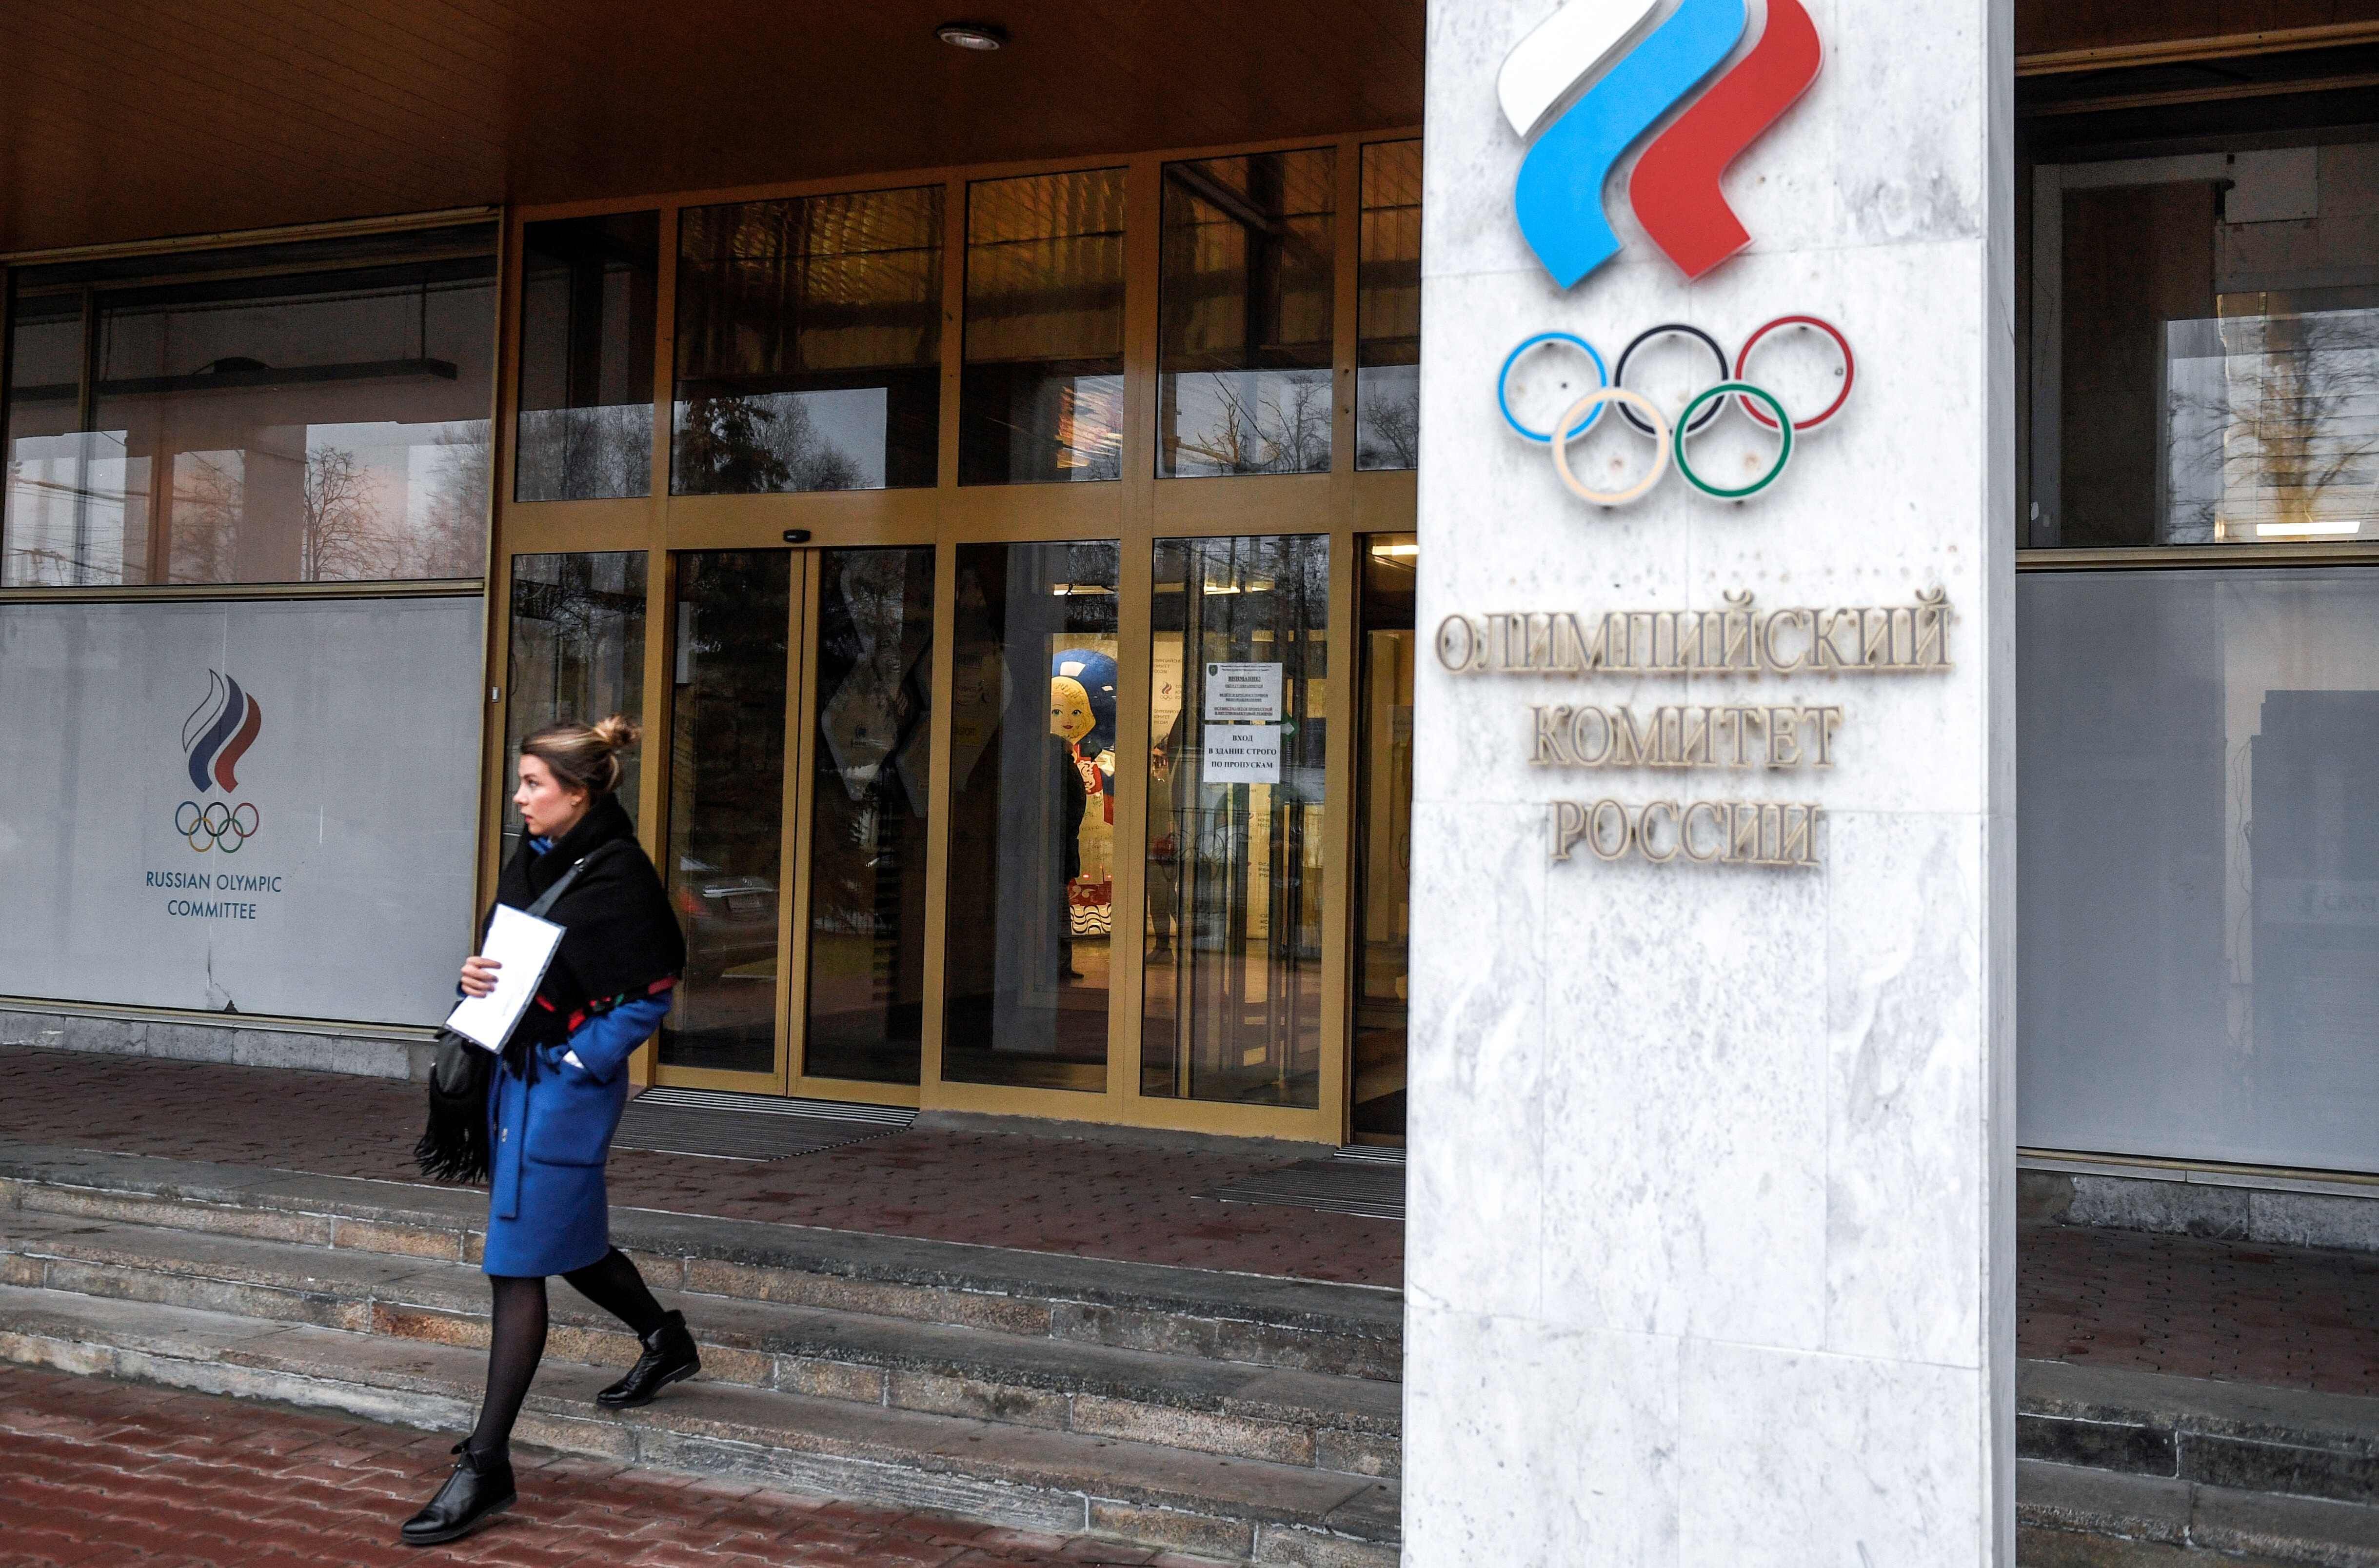 Rússia pode ficar fora das Olimpíadas de 2024, diz comitê italiano -  Esportes - ANSA Brasil